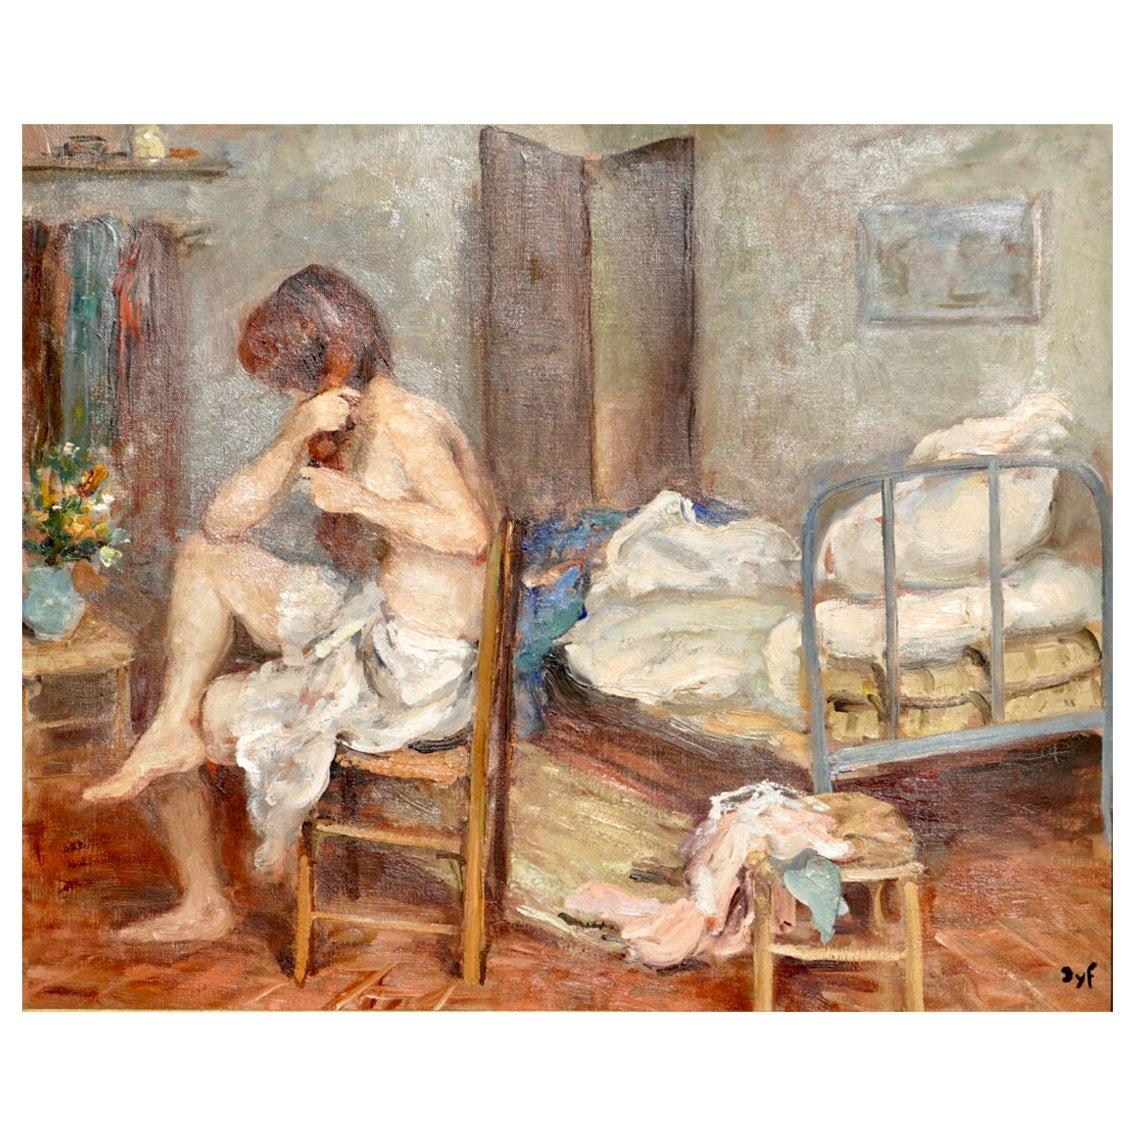 MARCEL DYF (FRANÇAIS 1899-1985) 

Fille se coiffant, 1957 Cette jeune femme délicate mais forte, de condition modeste, se coiffe à demi nue, assise sur une chaise dans sa chambre, en regardant une composition florale. Les couleurs sont vraies et